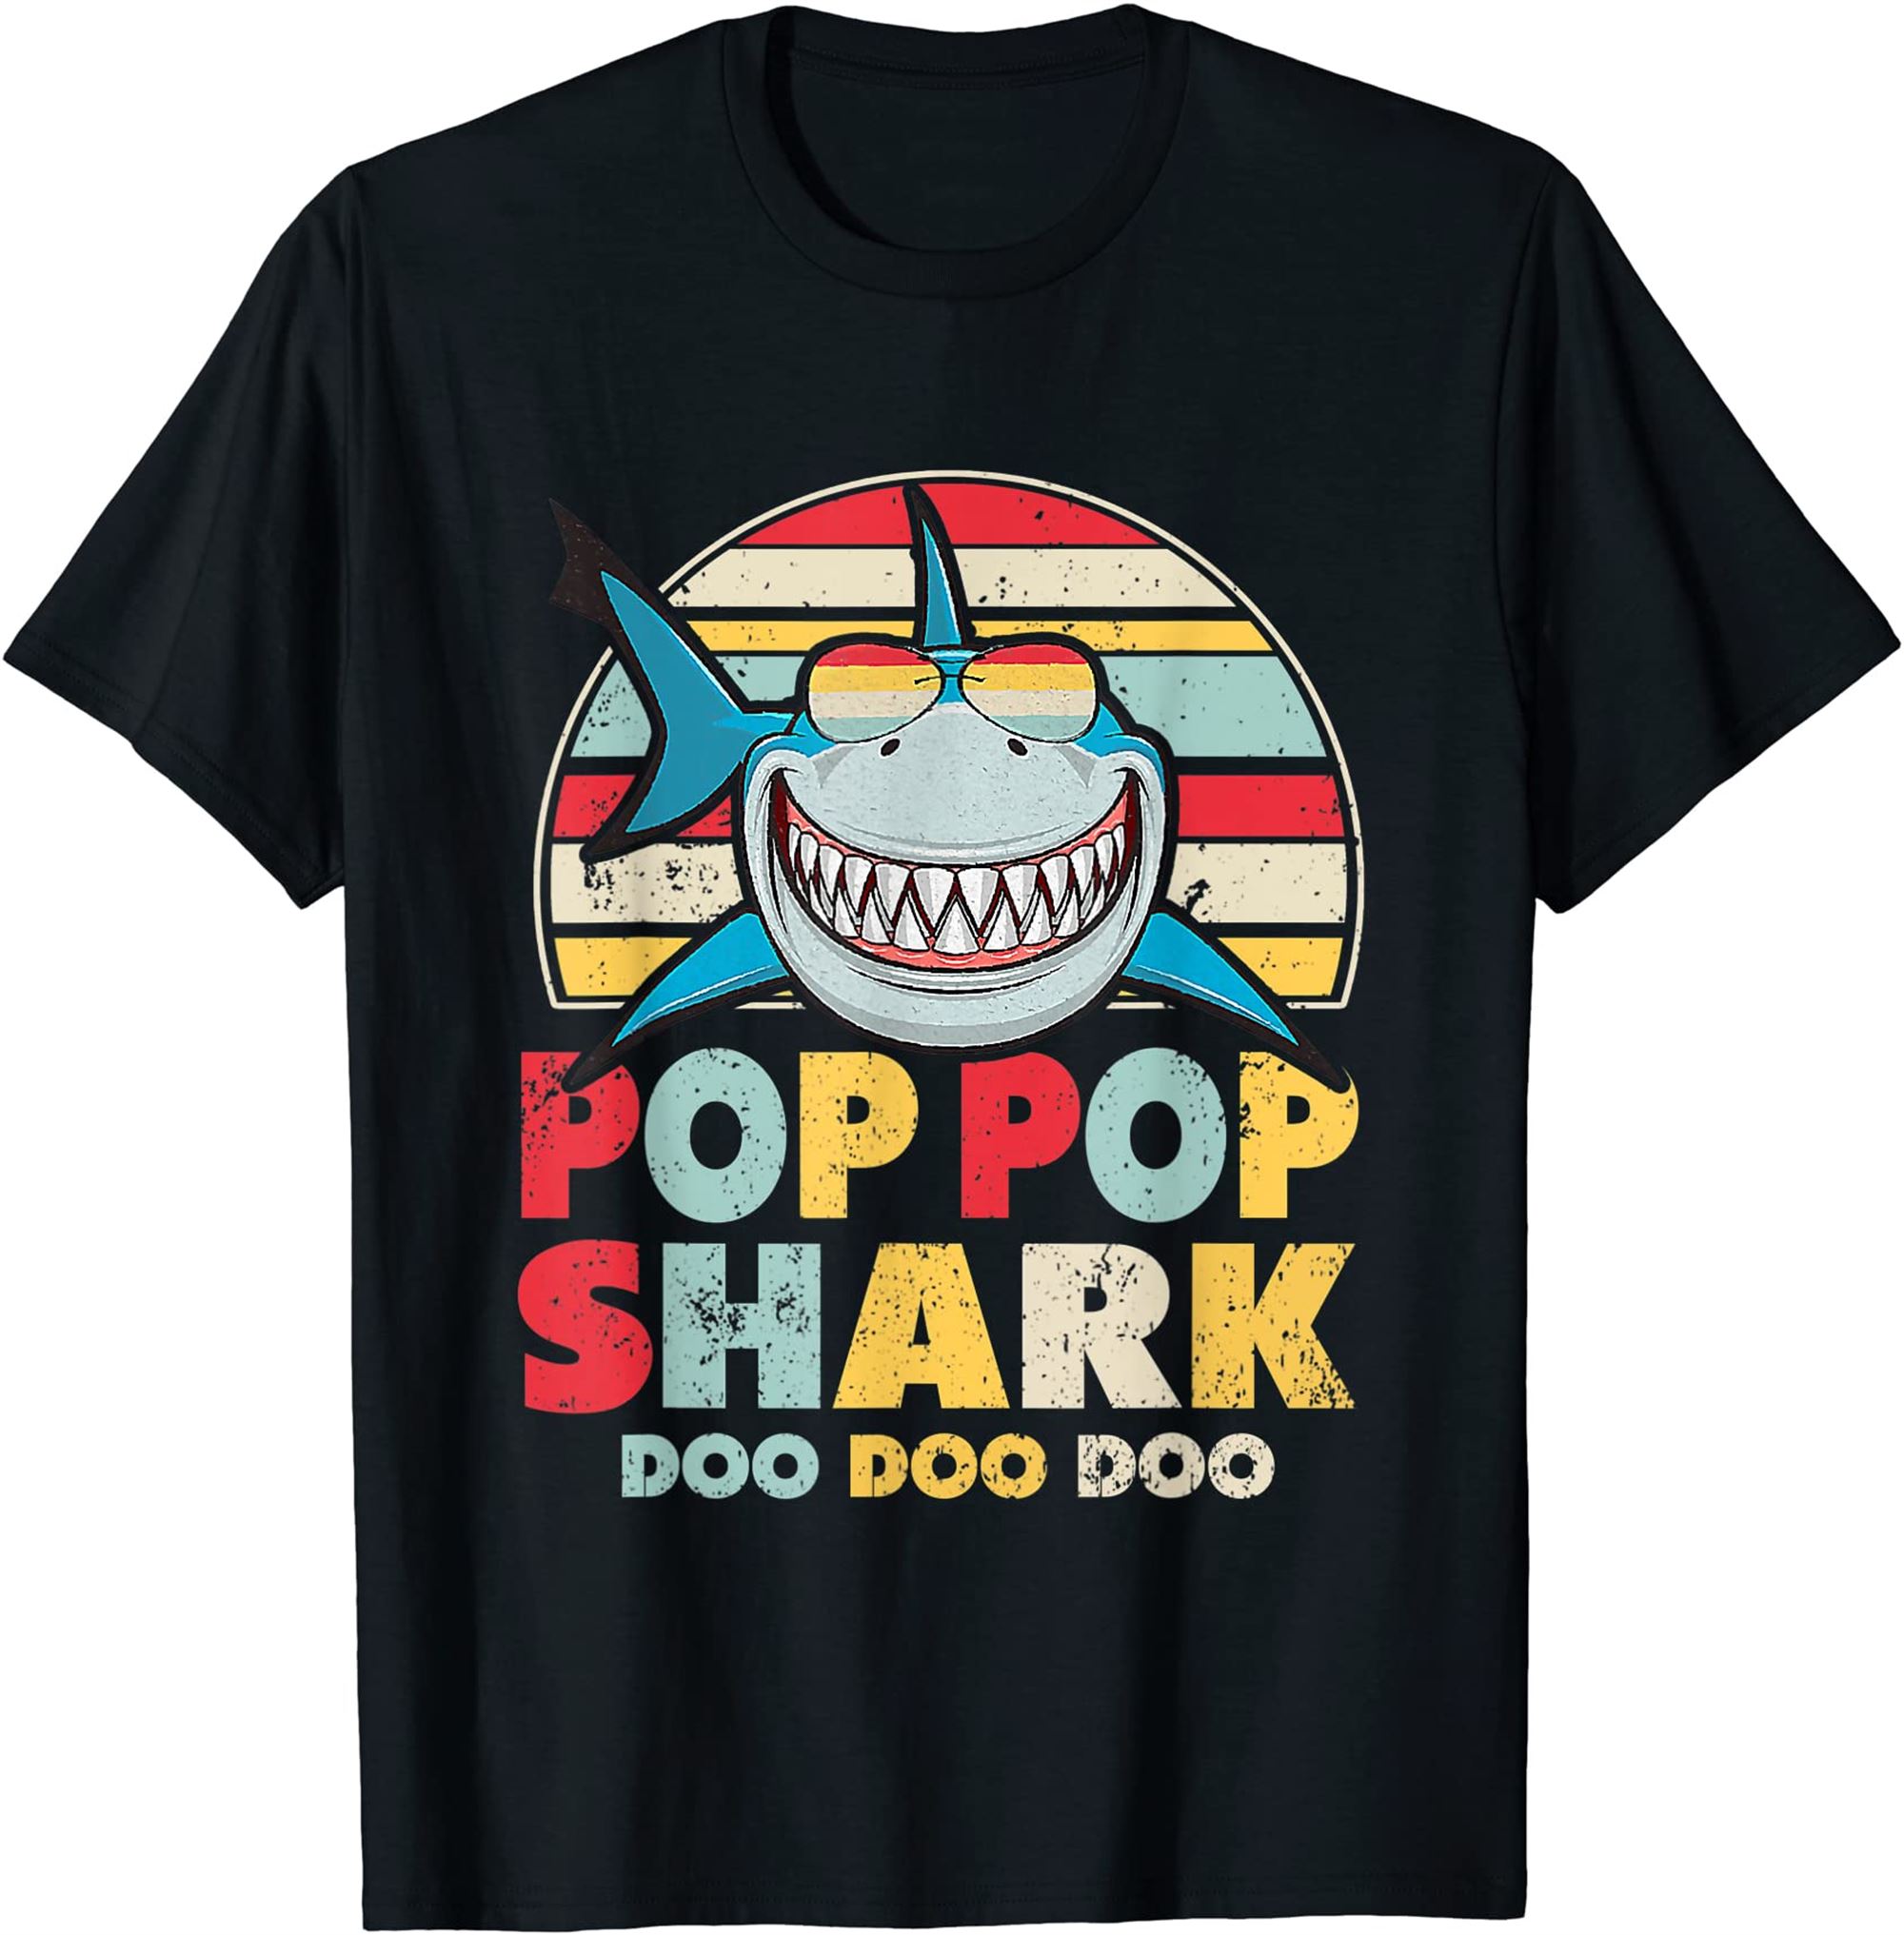 Pop Pop Shark Shirt Gift For Pop Pop T-shirt Size Up To 5xl